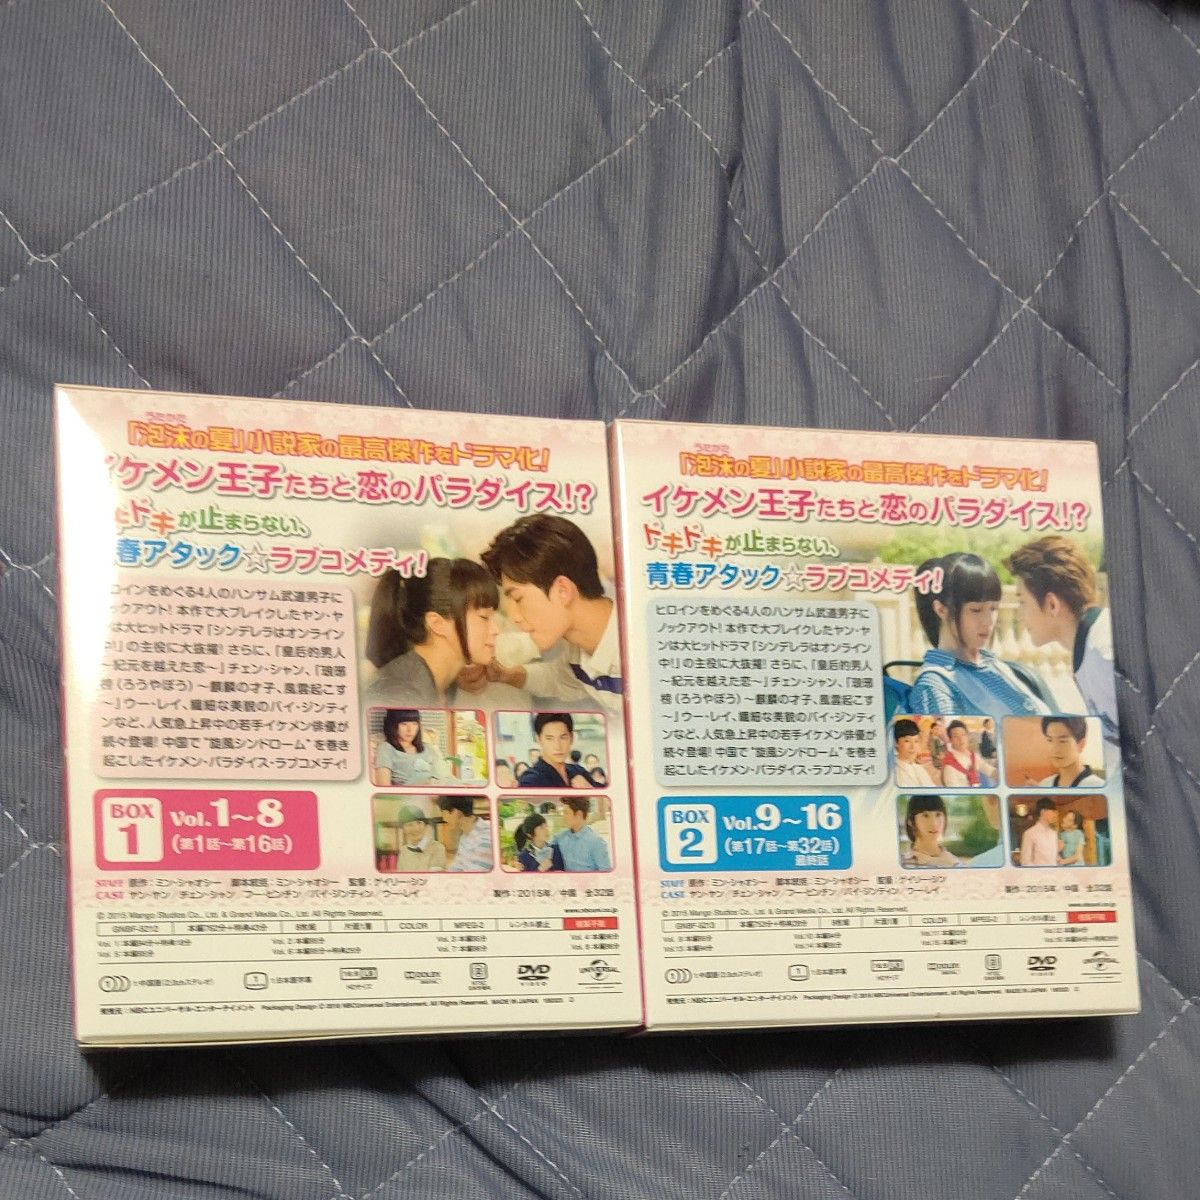 ときめき旋風ガール BOX1 & 2 コンプリートシンプルDVD-BOX5000円 